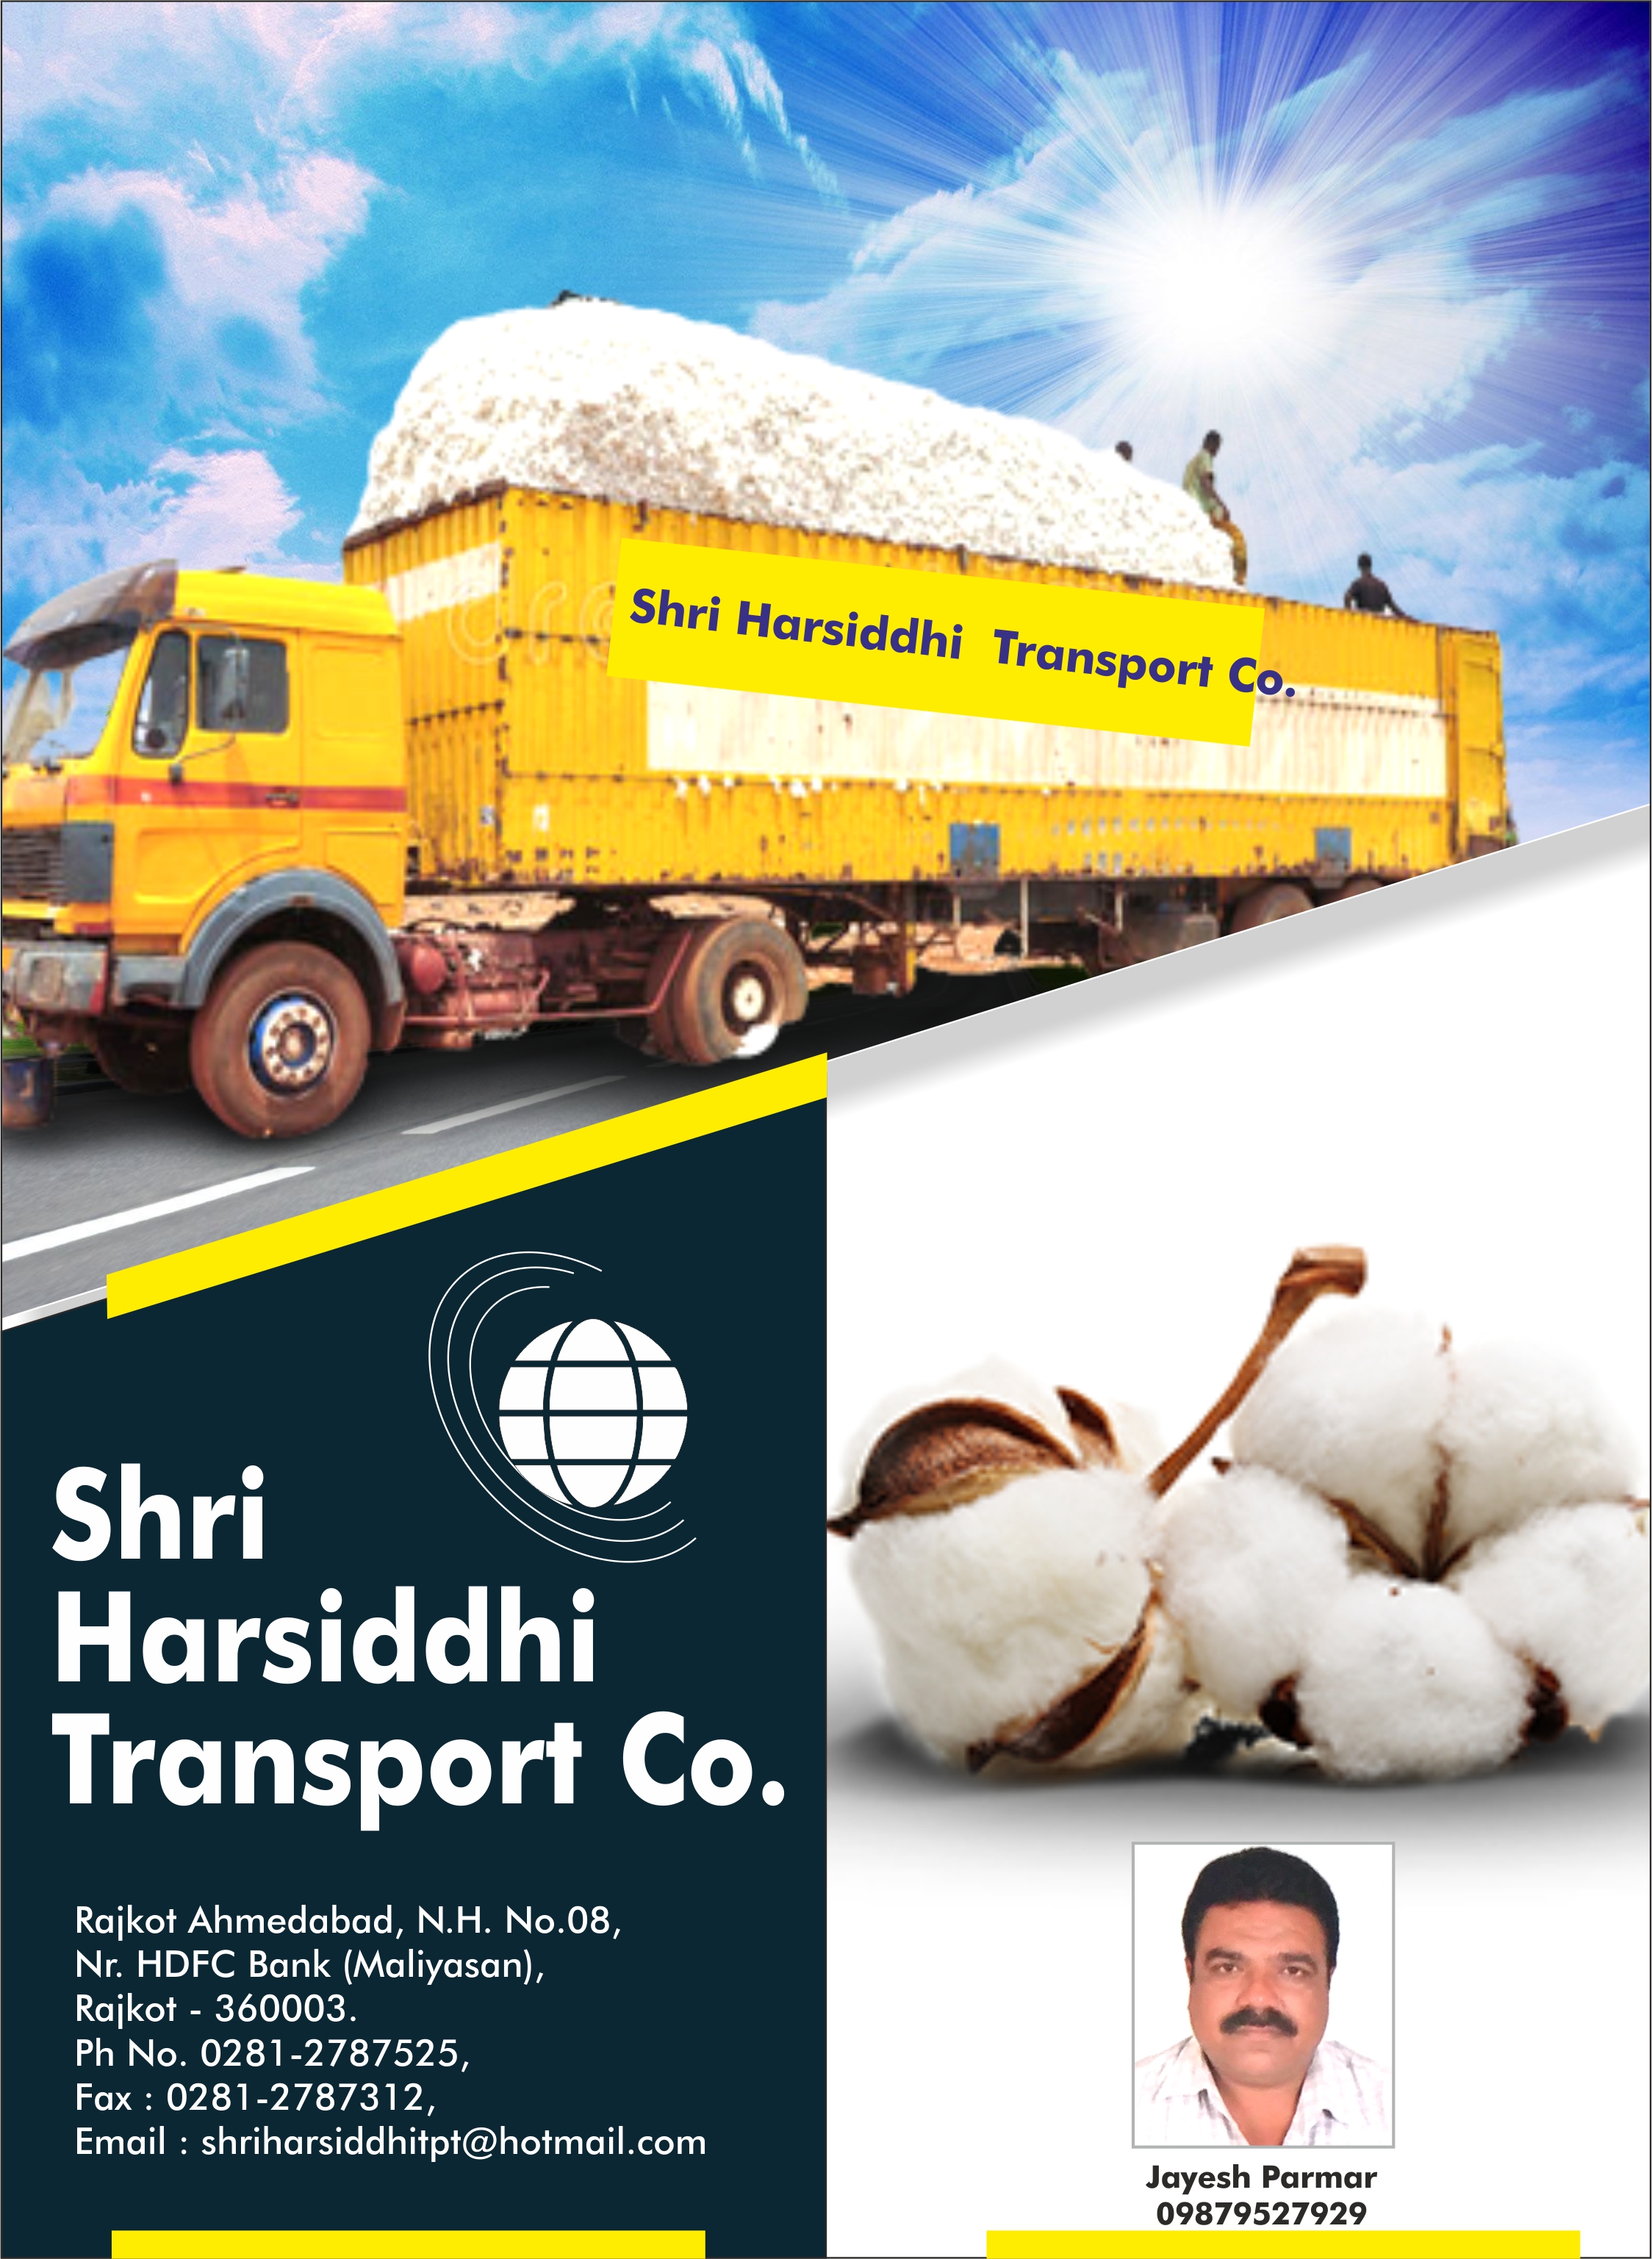 Shri Harsiddhi Transport Co.